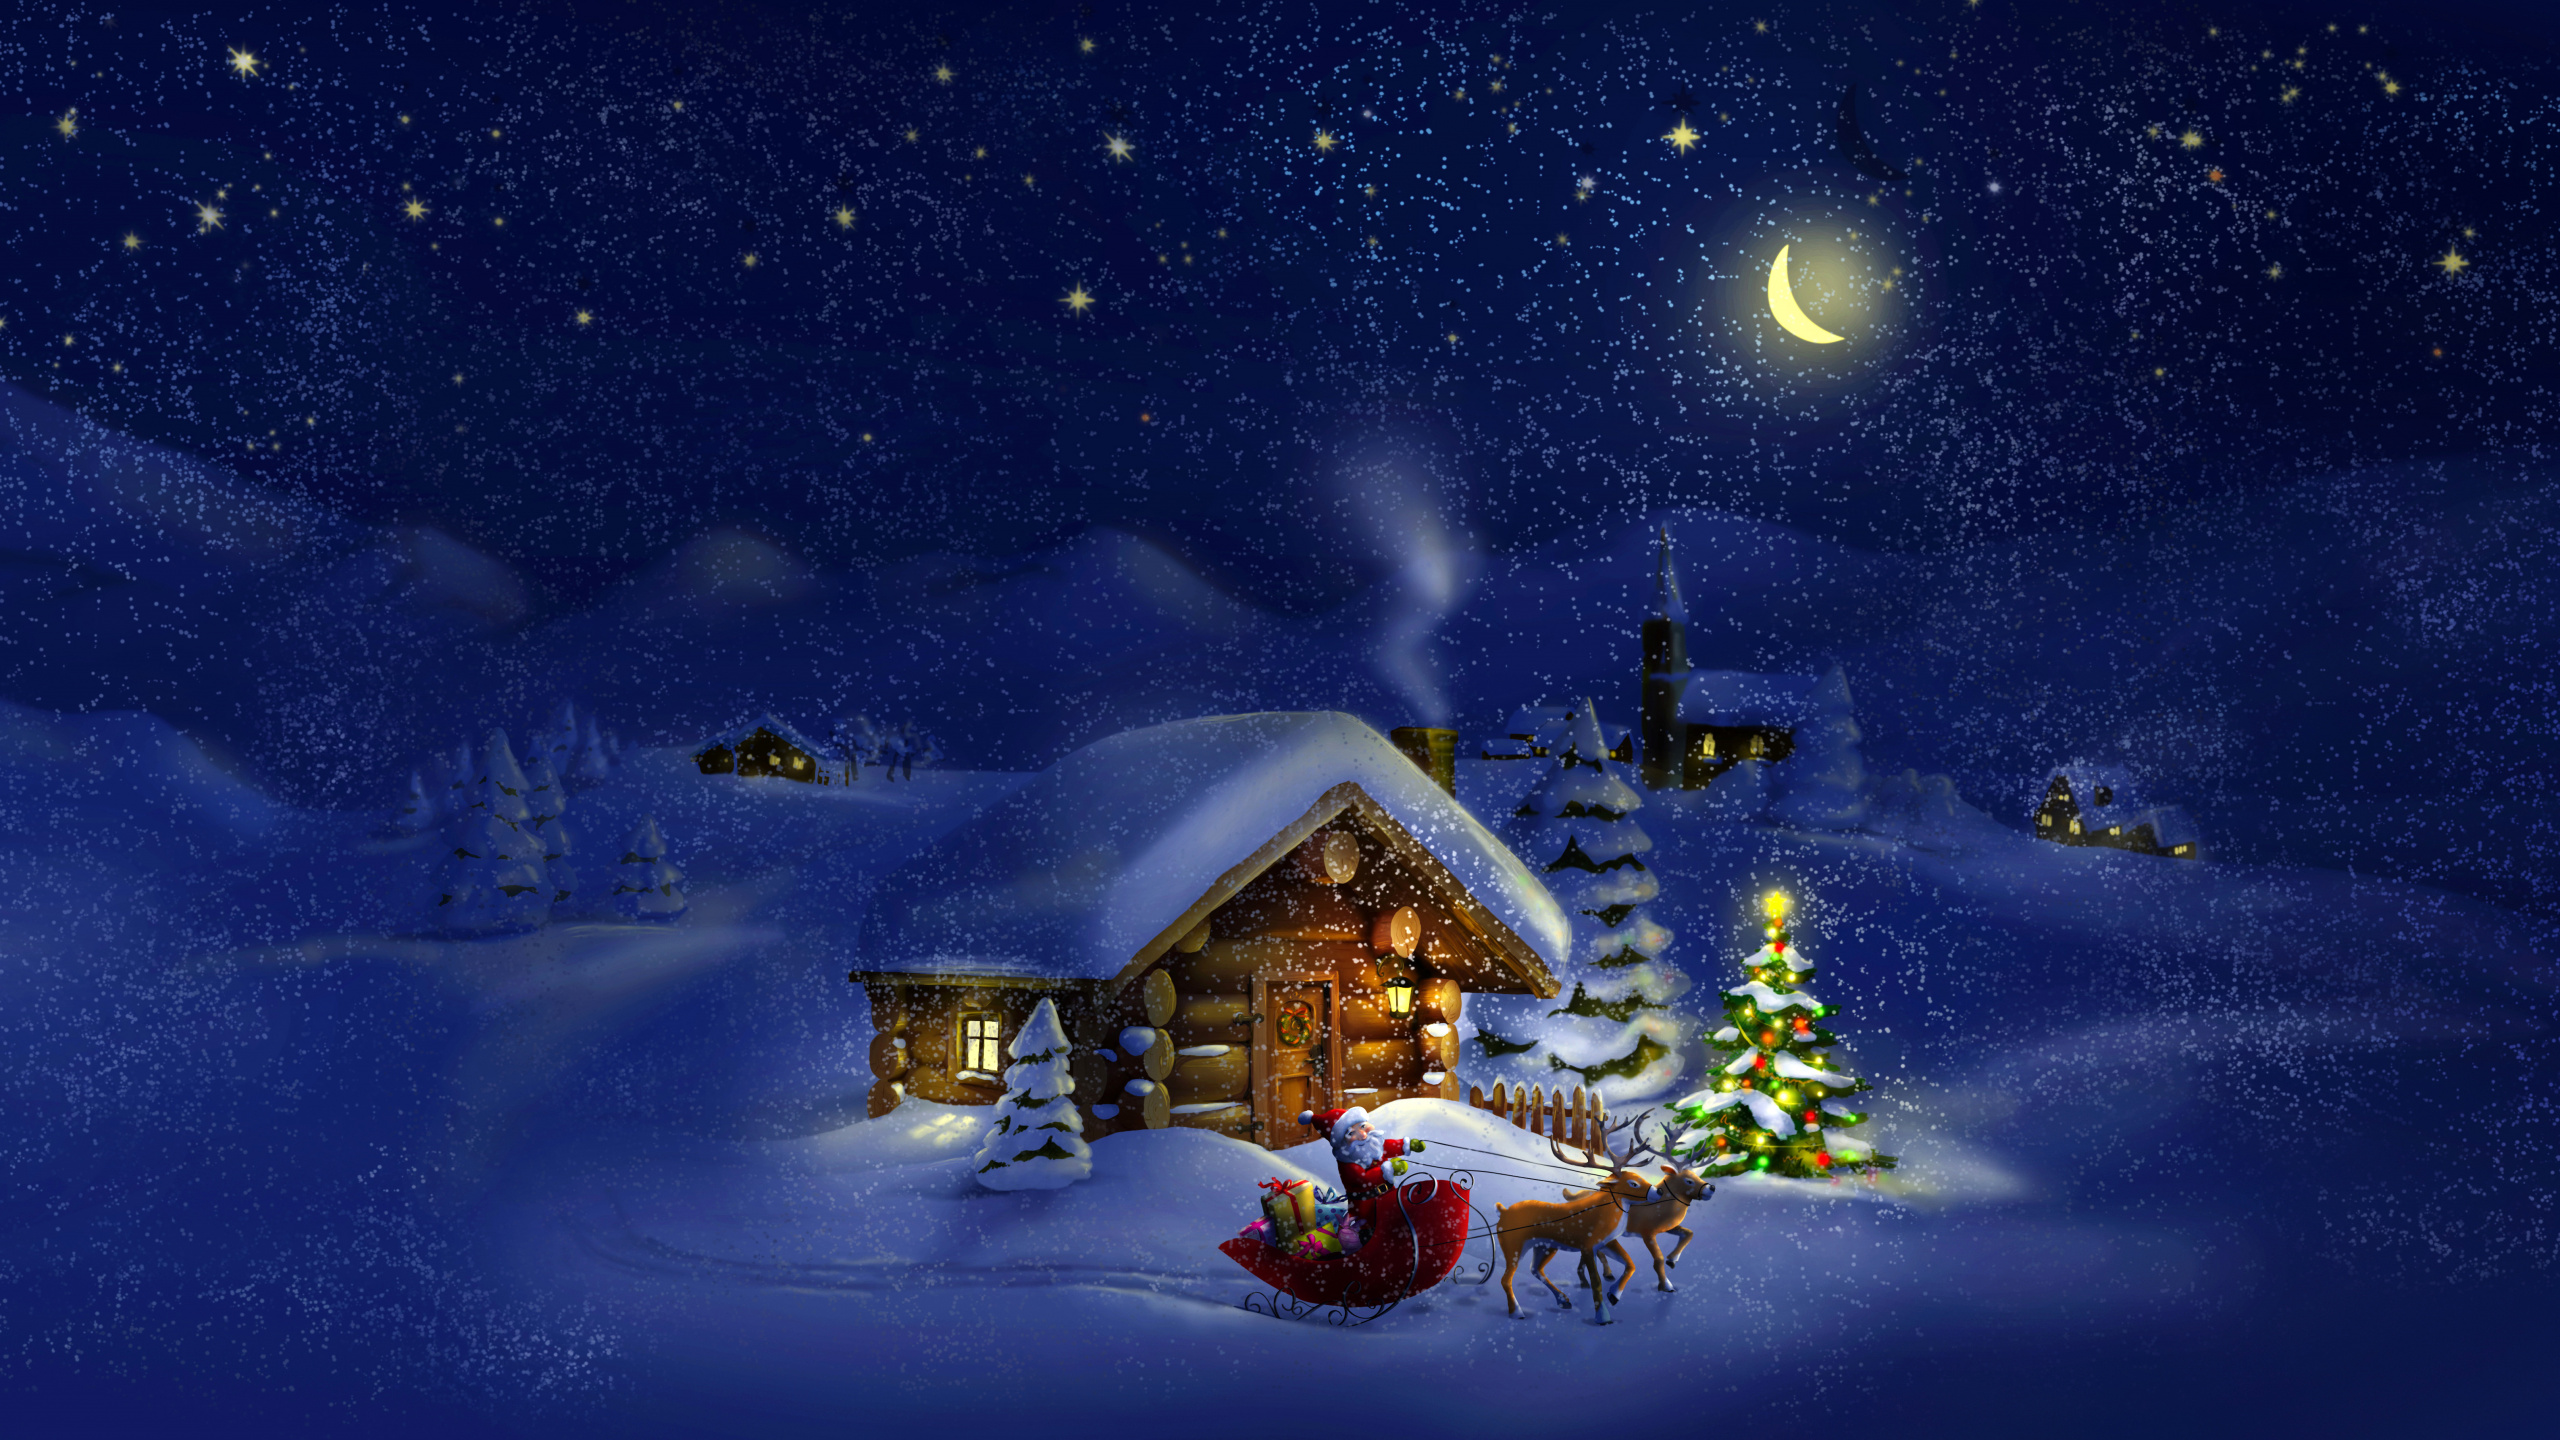 Weihnachten, Weihnachtsmann, Winter, Schnee, Nacht. Wallpaper in 2560x1440 Resolution